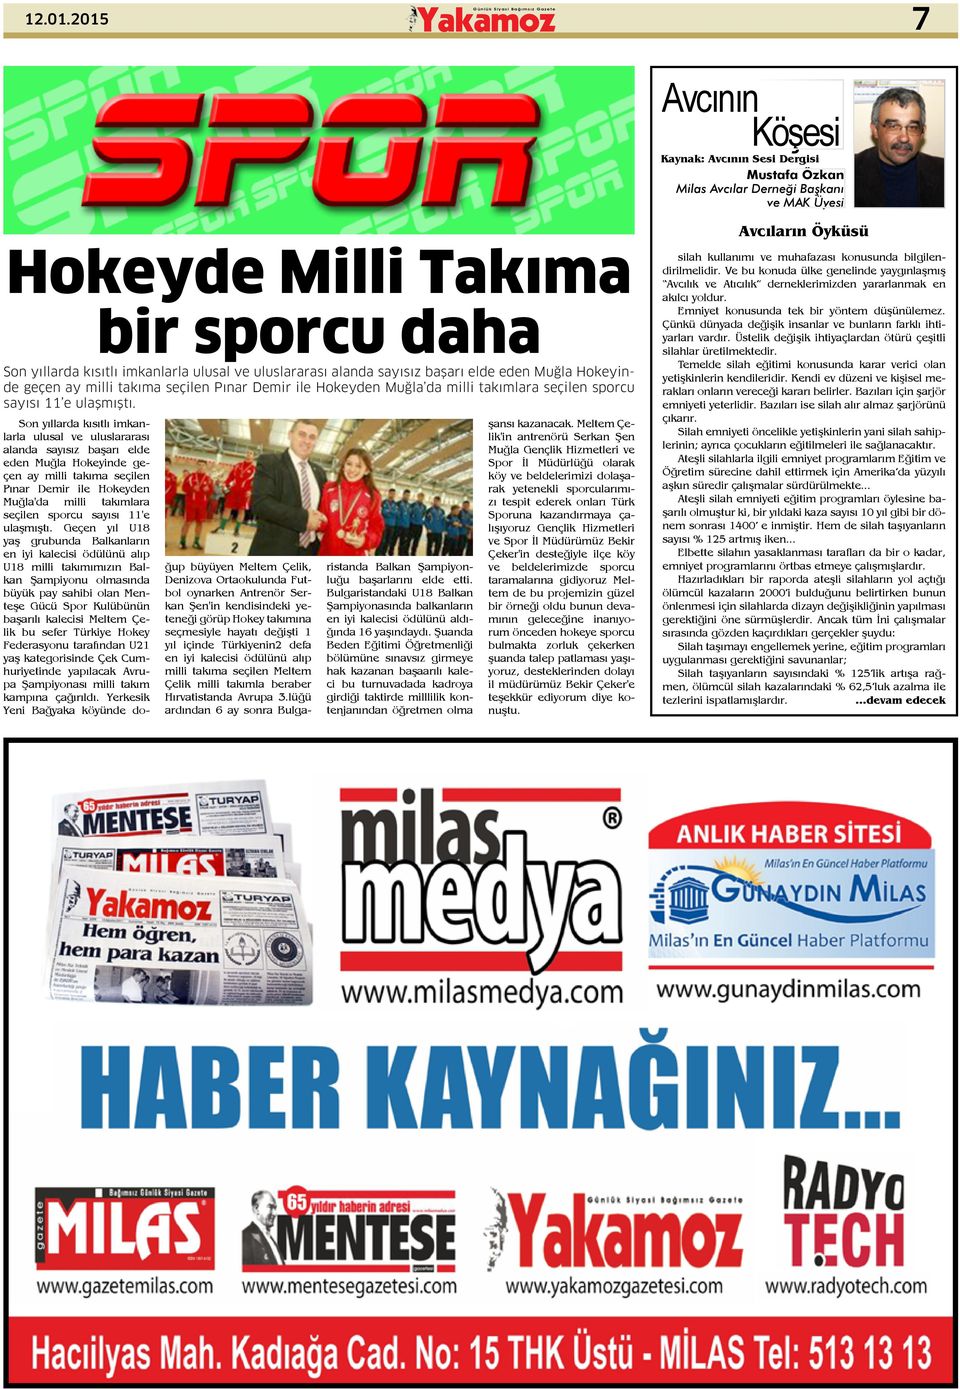 ulusal ve uluslararası alanda sayısız başarı elde eden Muğla Hokeyinde geçen ay milli takıma seçilen Pınar Demir ile Hokeyden Muğla da milli takımlara seçilen sporcu sayısı 11 e ulaşmıştı.